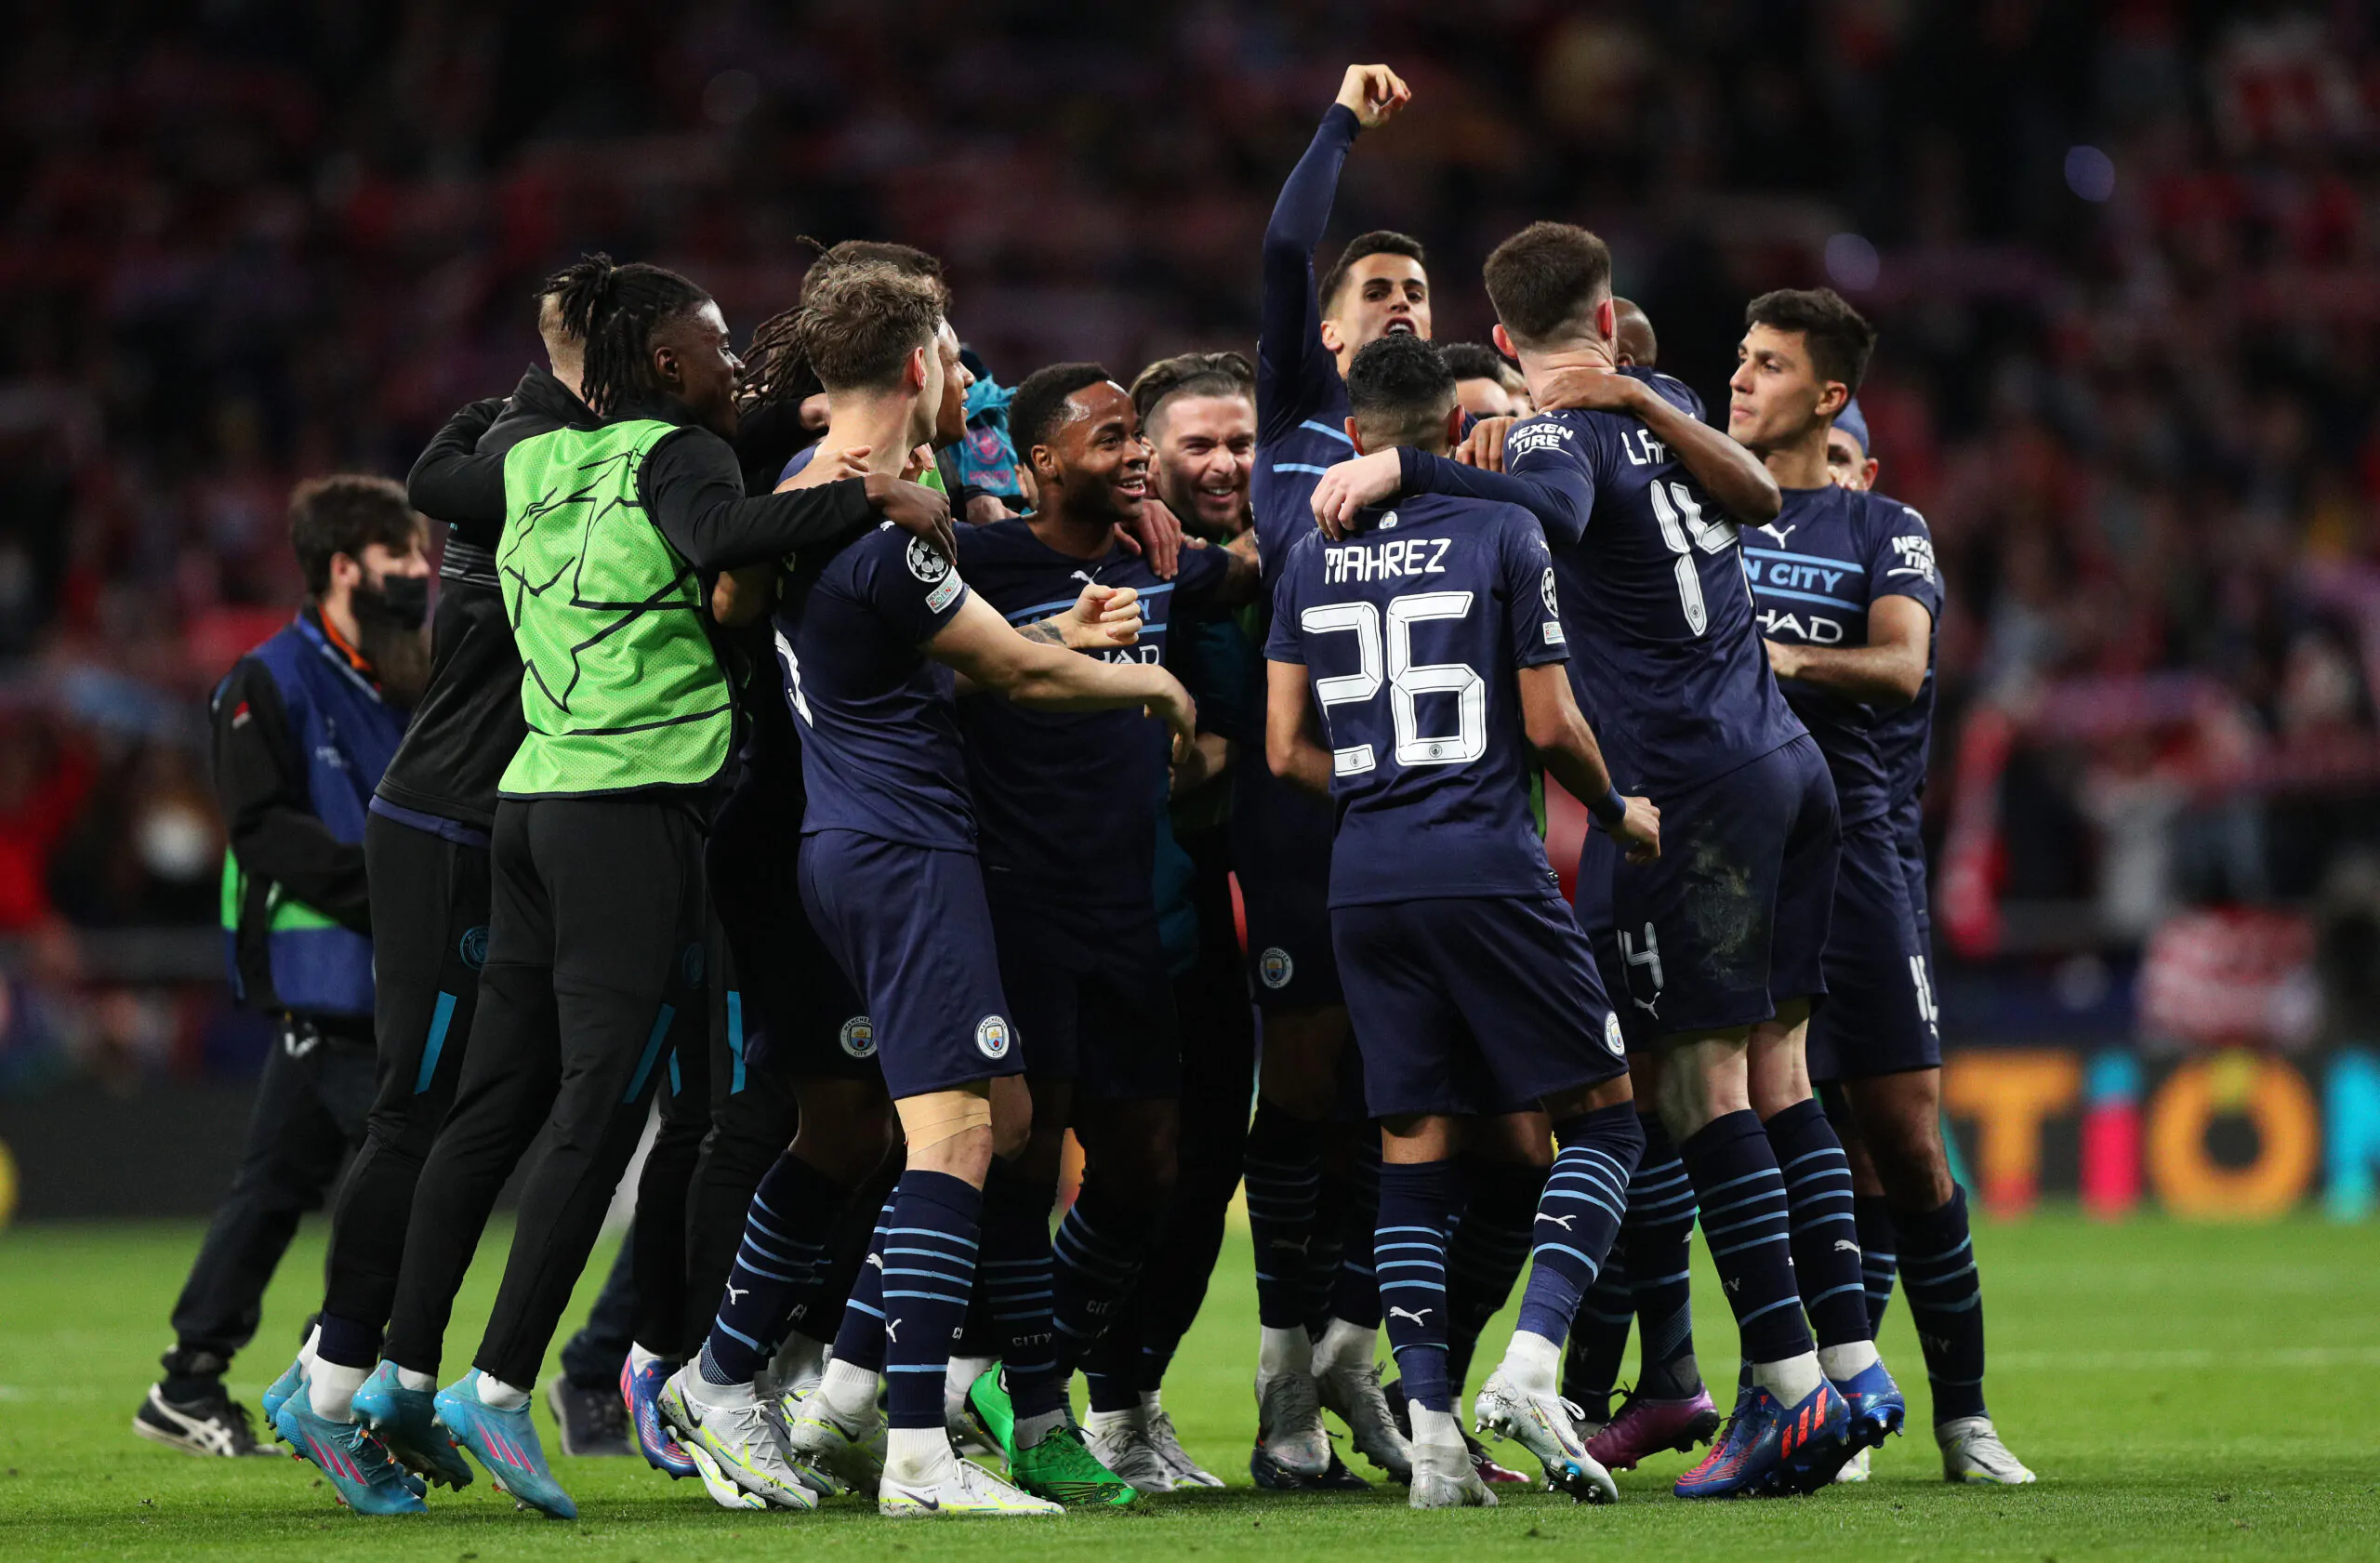 Calciomercato Milan, Investcorp vuole la stella del Manchester City